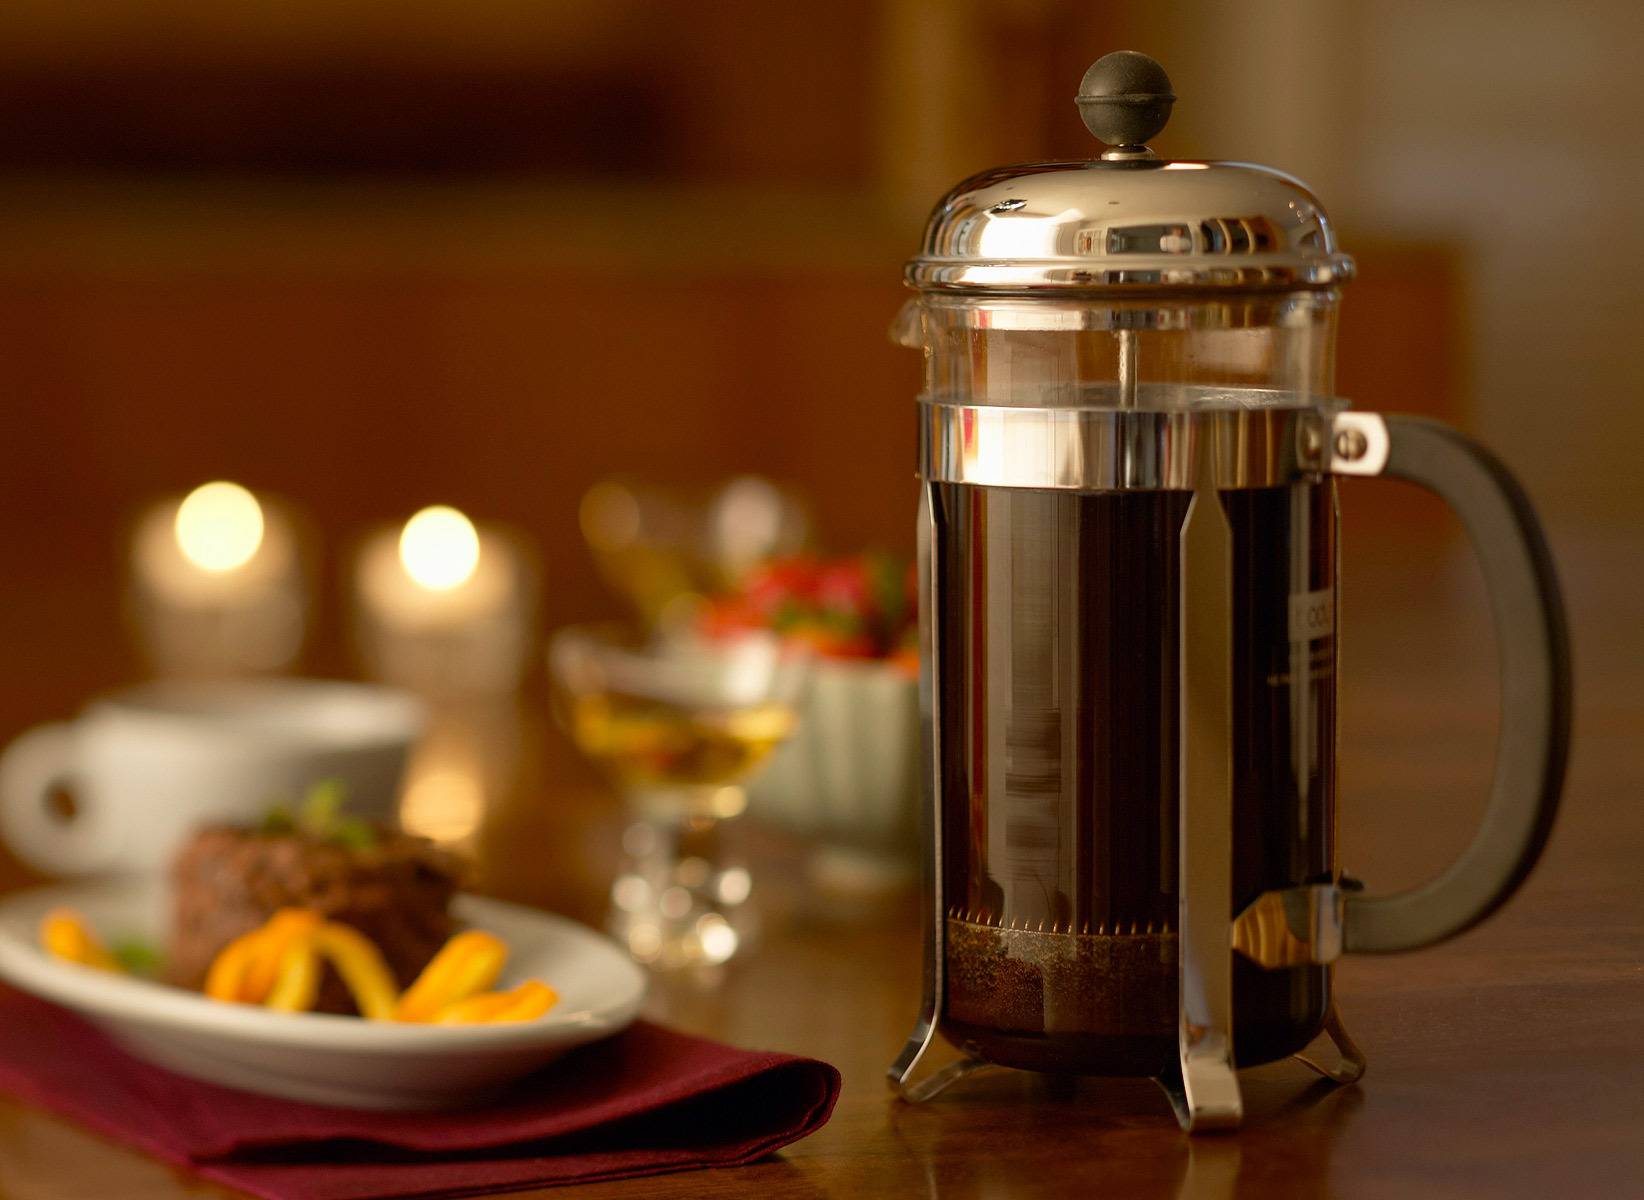 Френч-пресс для кофе и чая - как выбрать лучший и как заваривать напитки